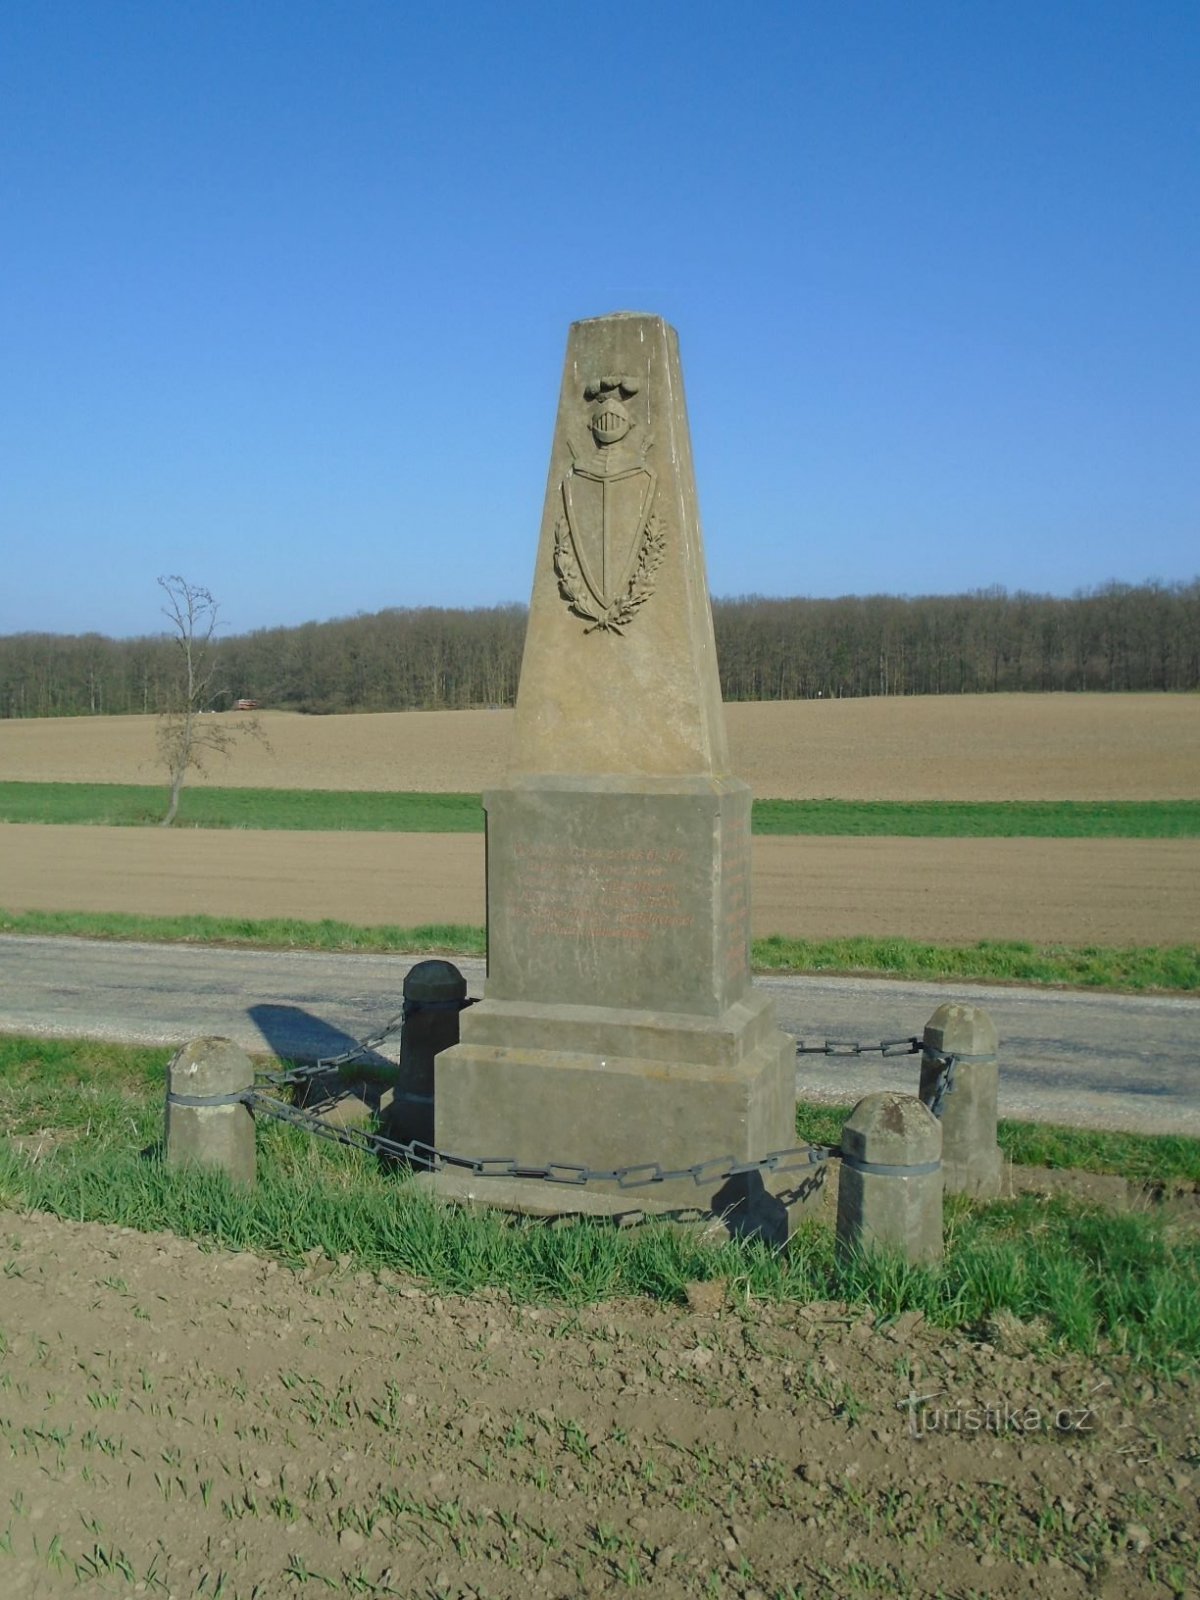 道端にあるオーストリア第 61 歩兵連隊の記念碑 (Čistěves、7.4.2019 年 XNUMX 月 XNUMX 日)